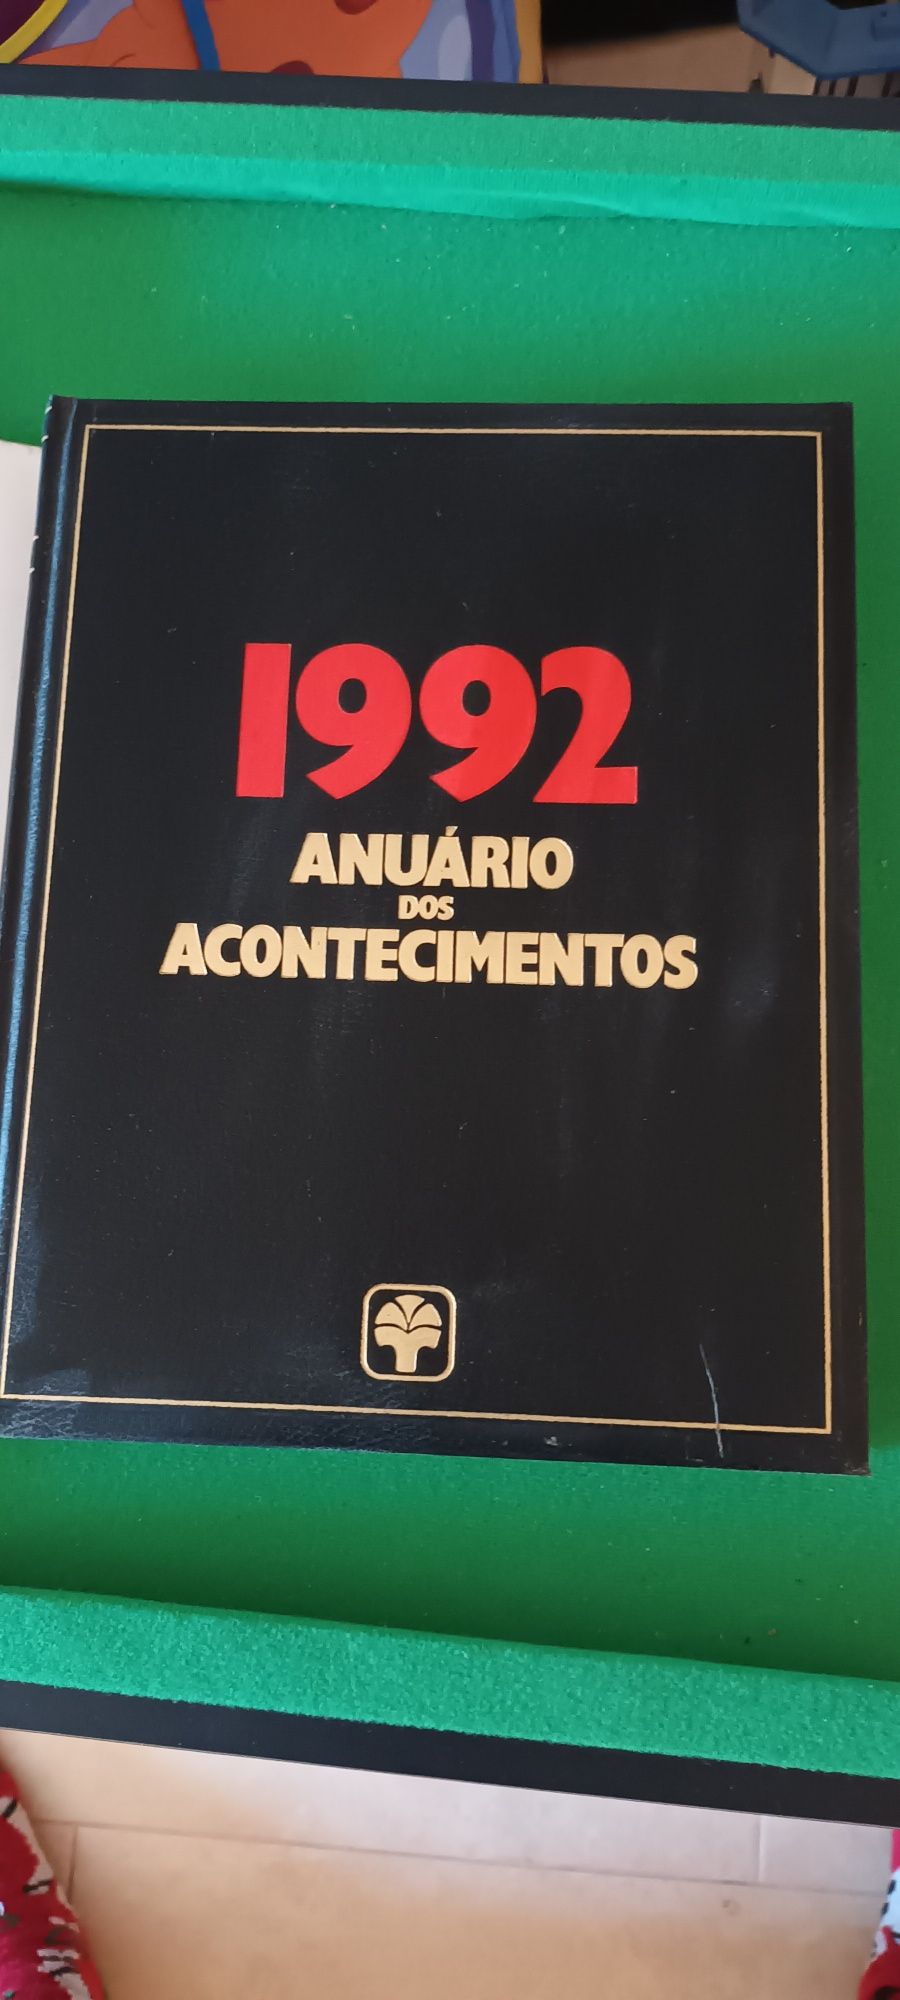 Anuario Acontecimentos 1992